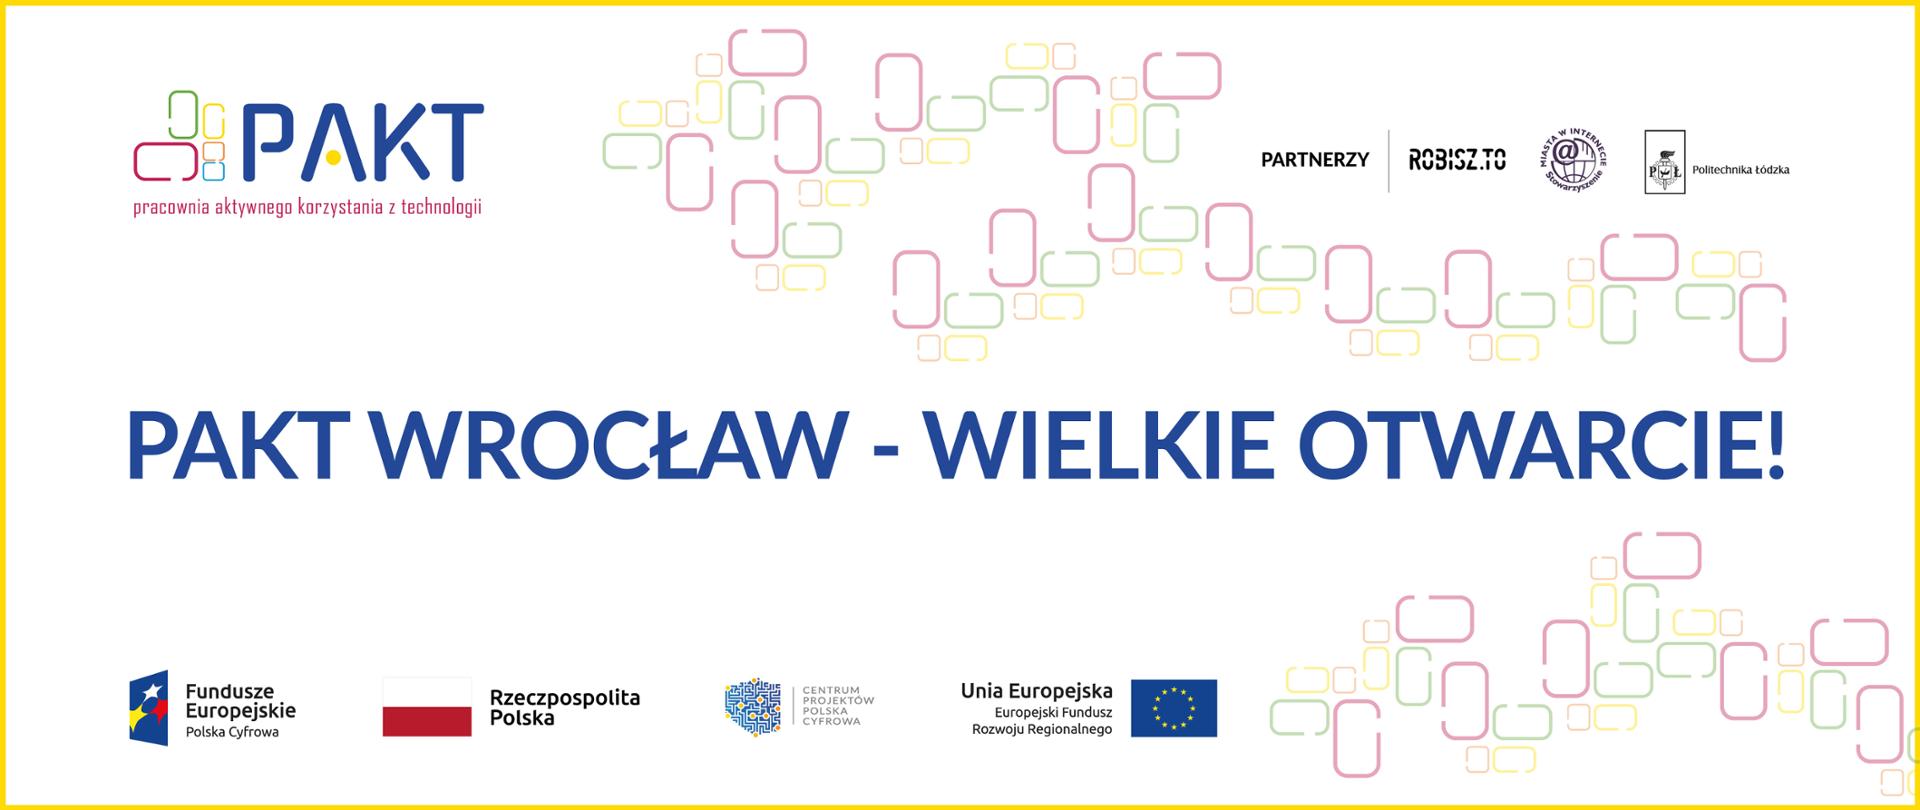 Otwarcie pracowni PAKT we Wroclawiu